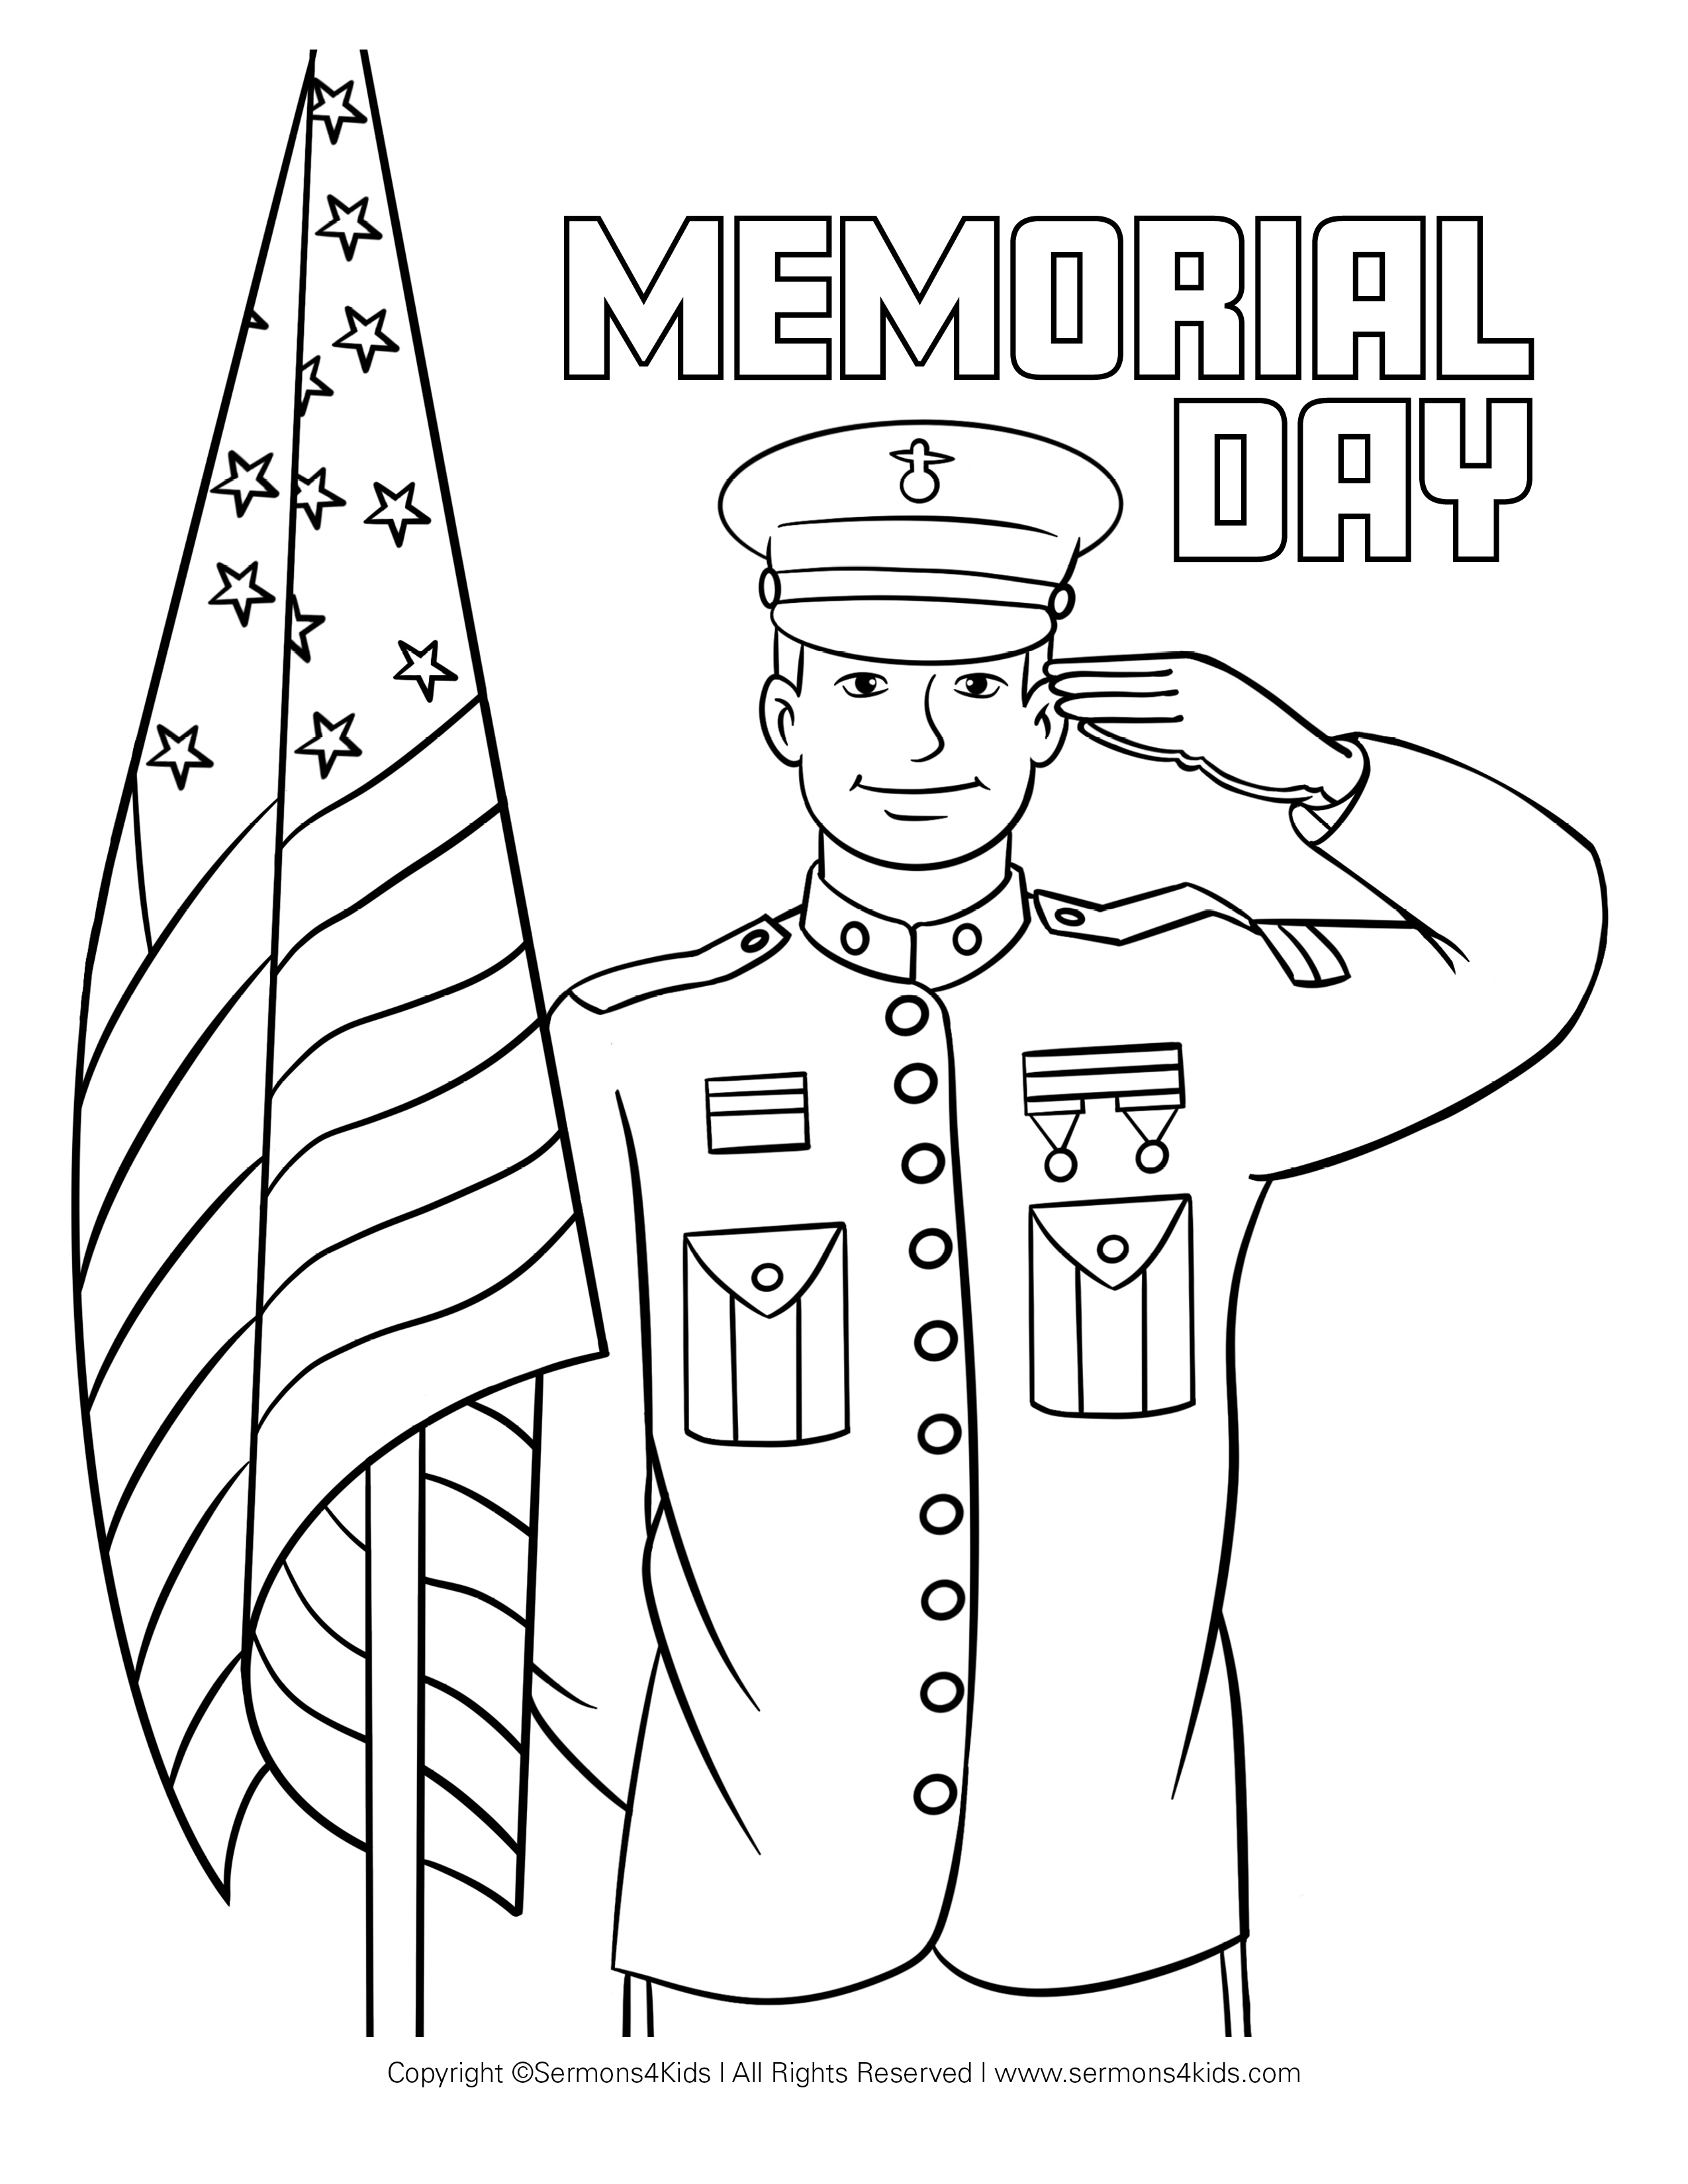 Veteran's / Memorial Day